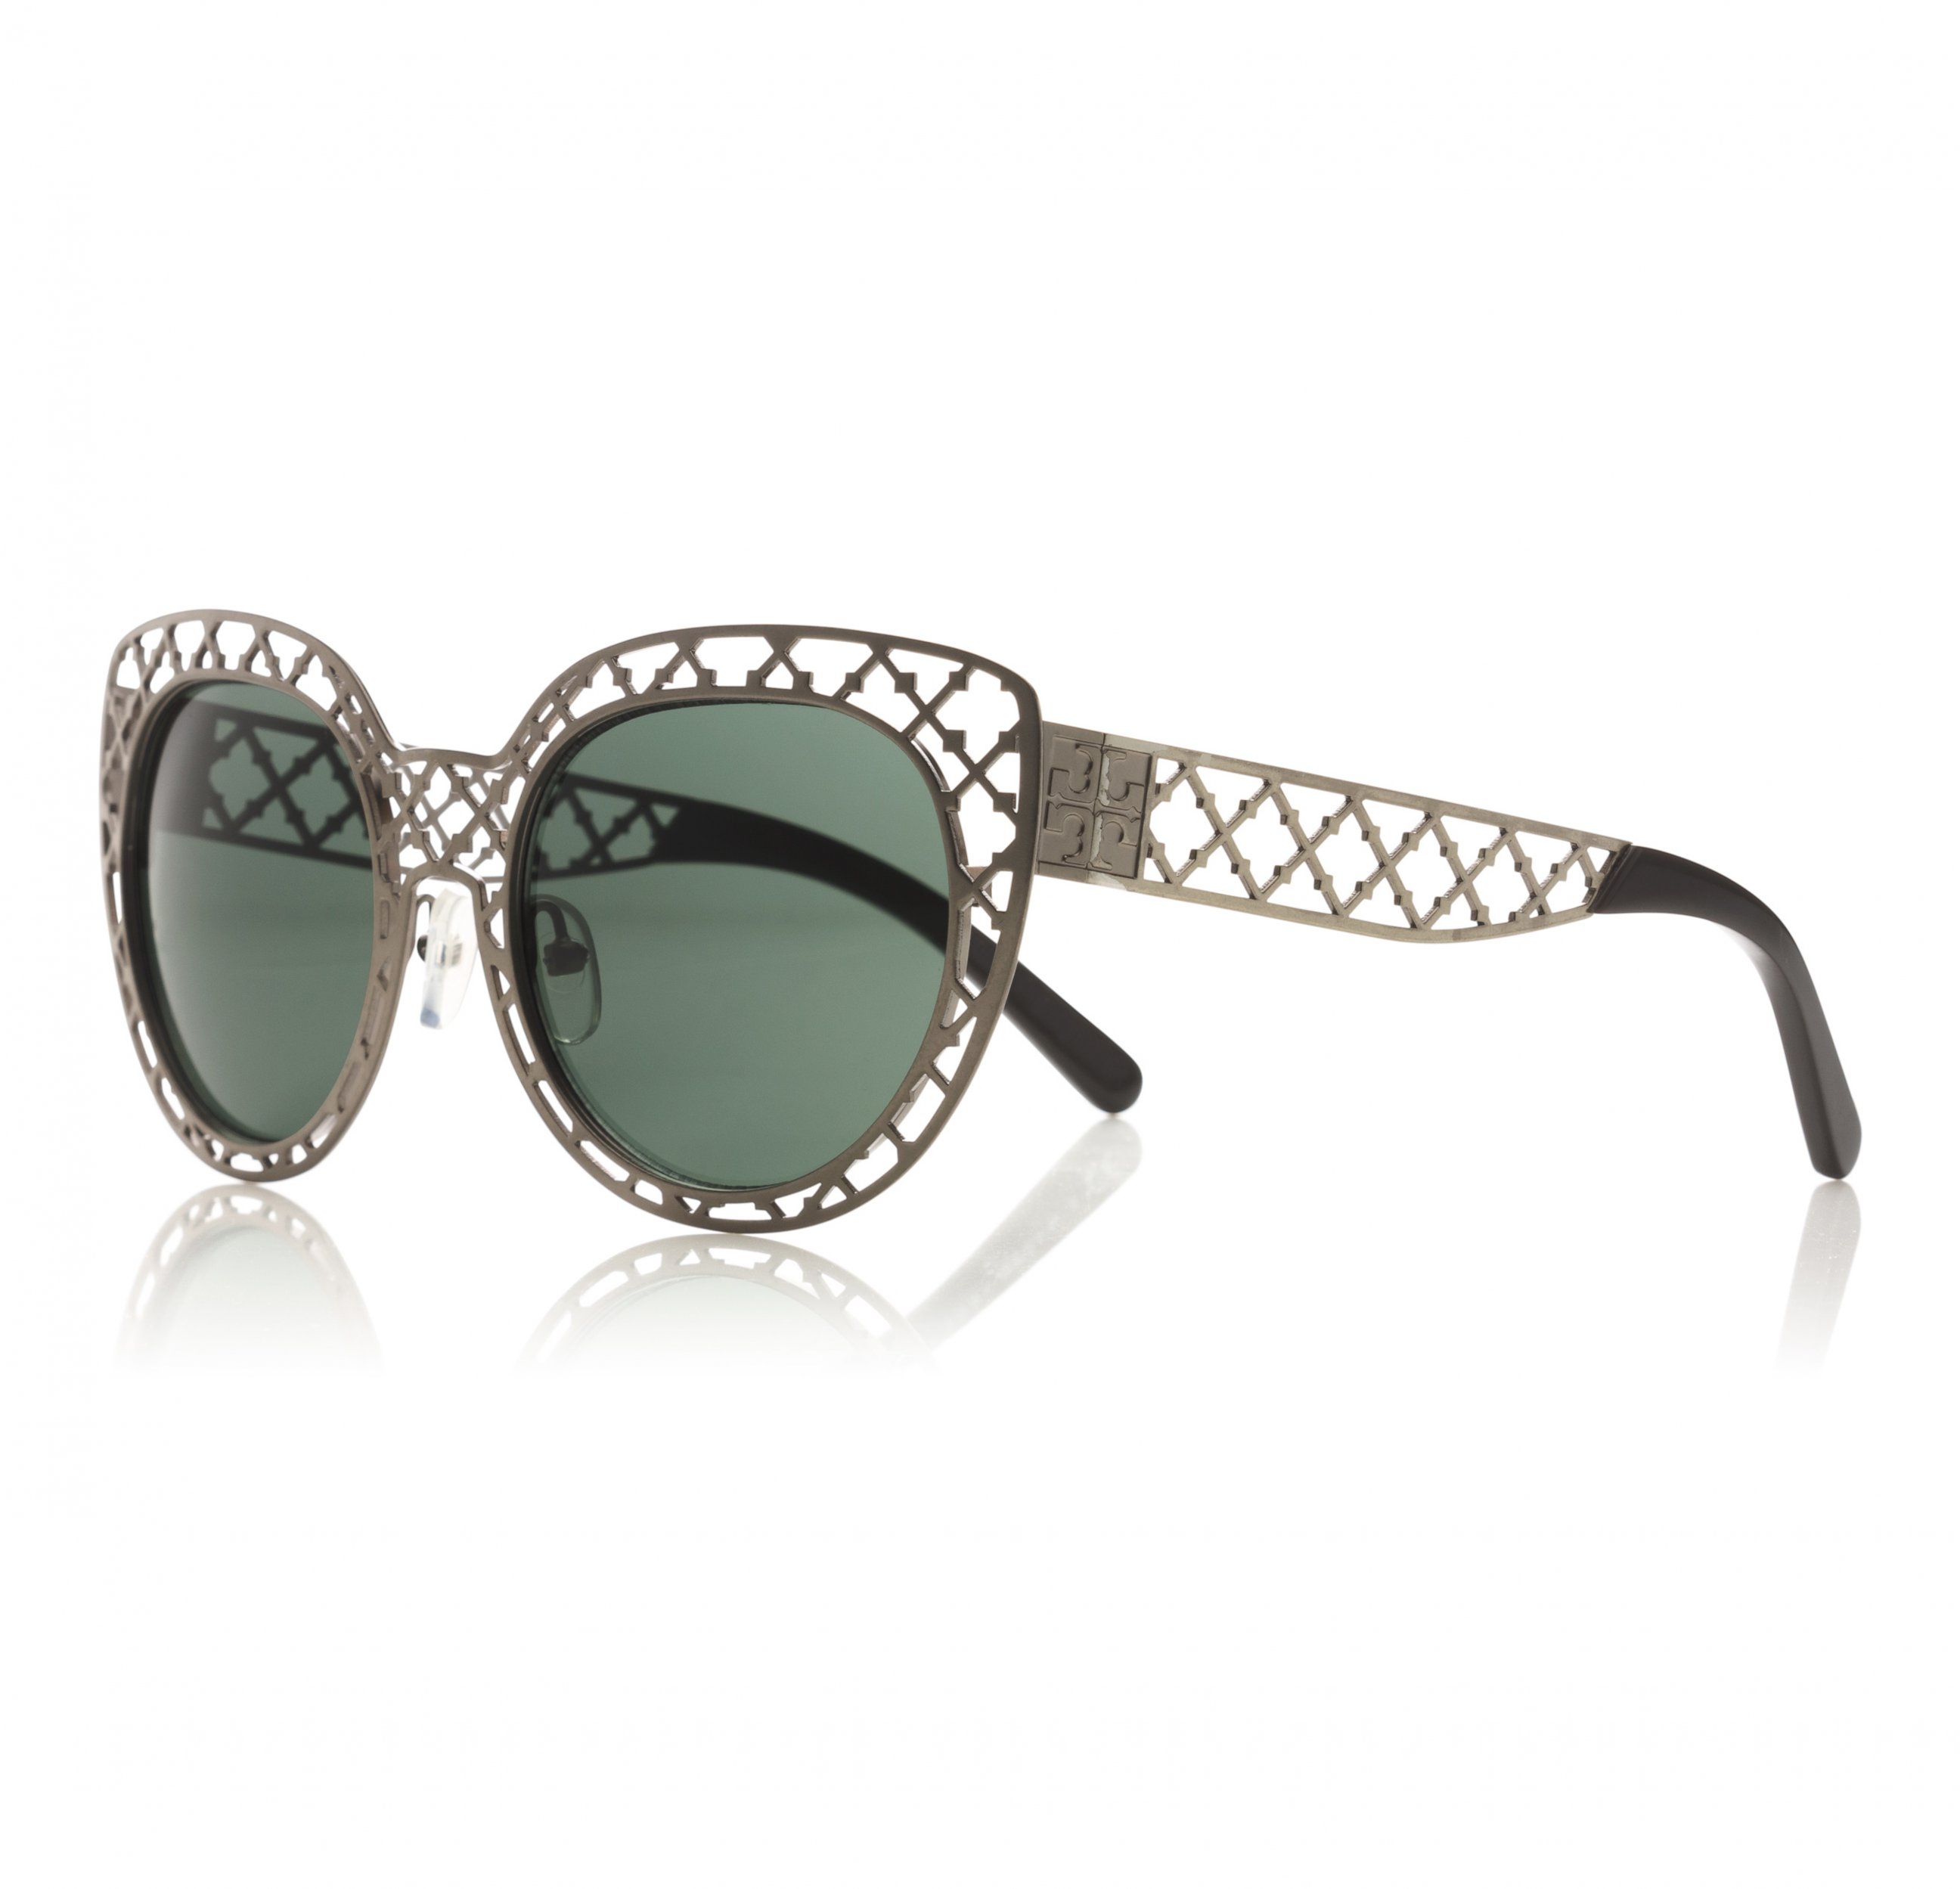 PHOTO: Lattice Sunglasses, $250